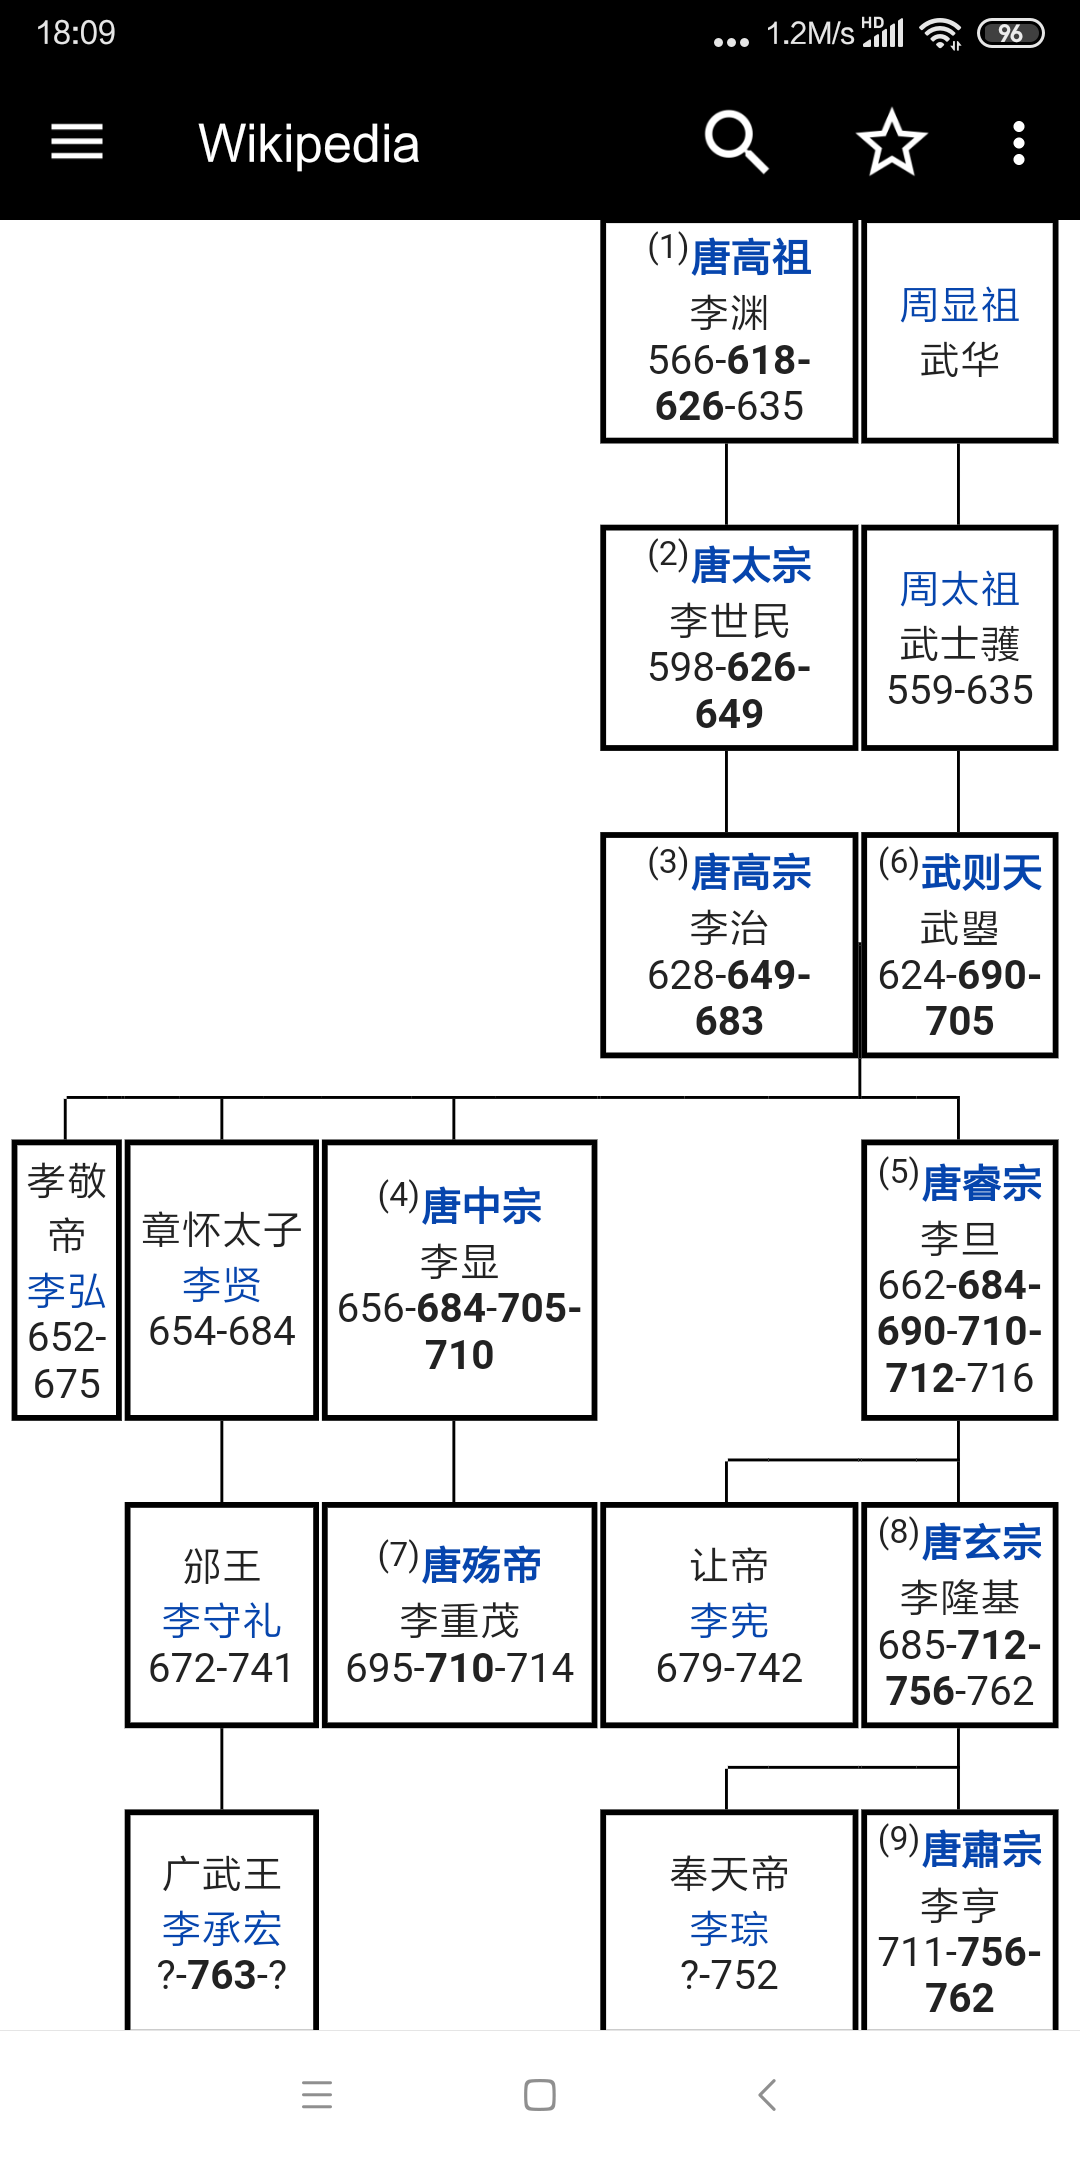 唐朝皇帝世系表:   显示全部